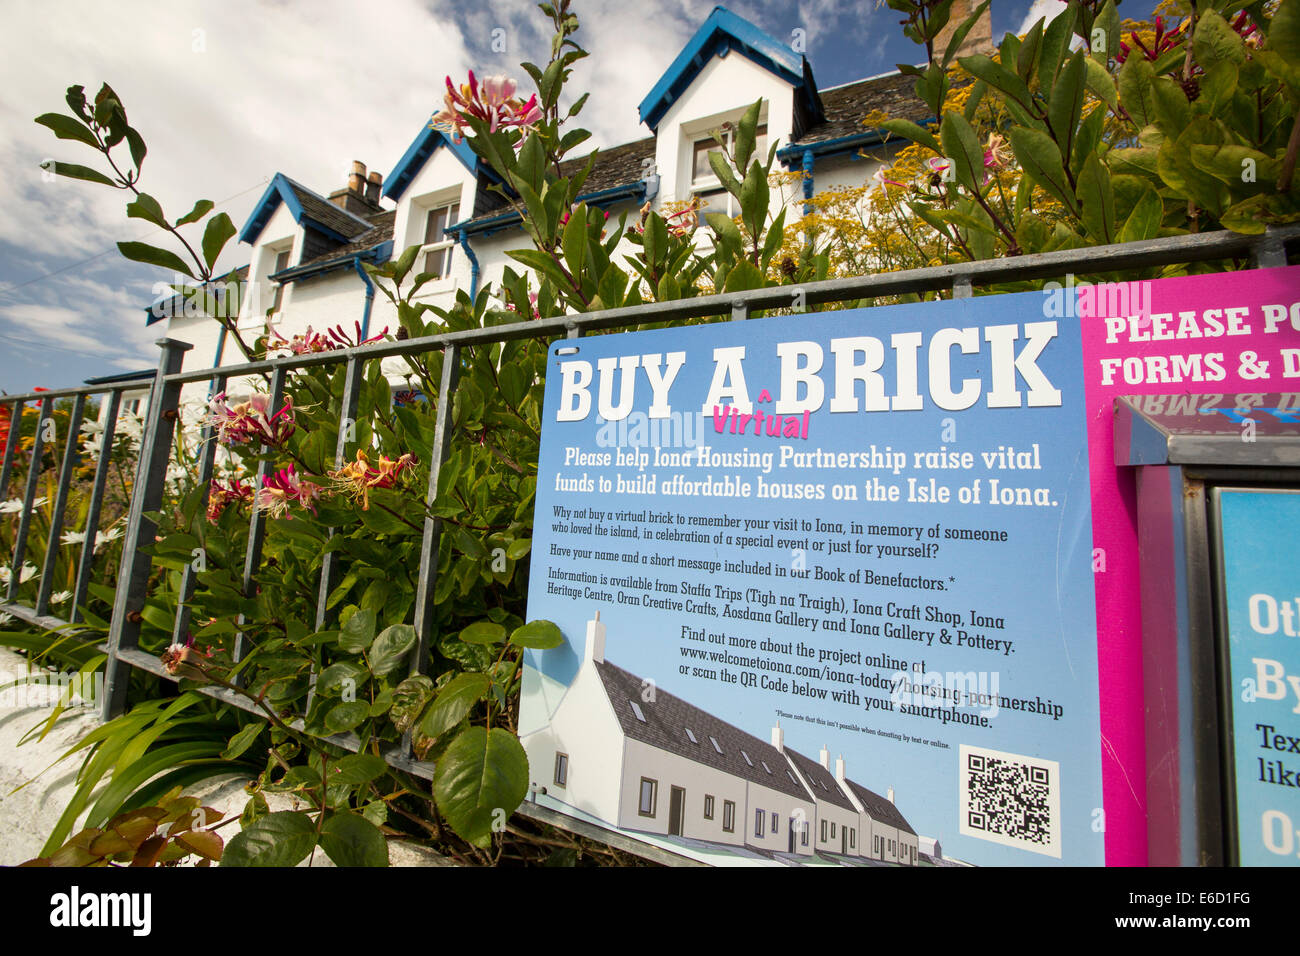 Una campagna per raccogliere fondi per costruire abitazioni a prezzi accessibili a Iona e Mull, Scotland, Regno Unito. I prezzi della proprietà ave stato spinto oltre la portata dei folk locali a casa vacanze degli acquirenti. Foto Stock